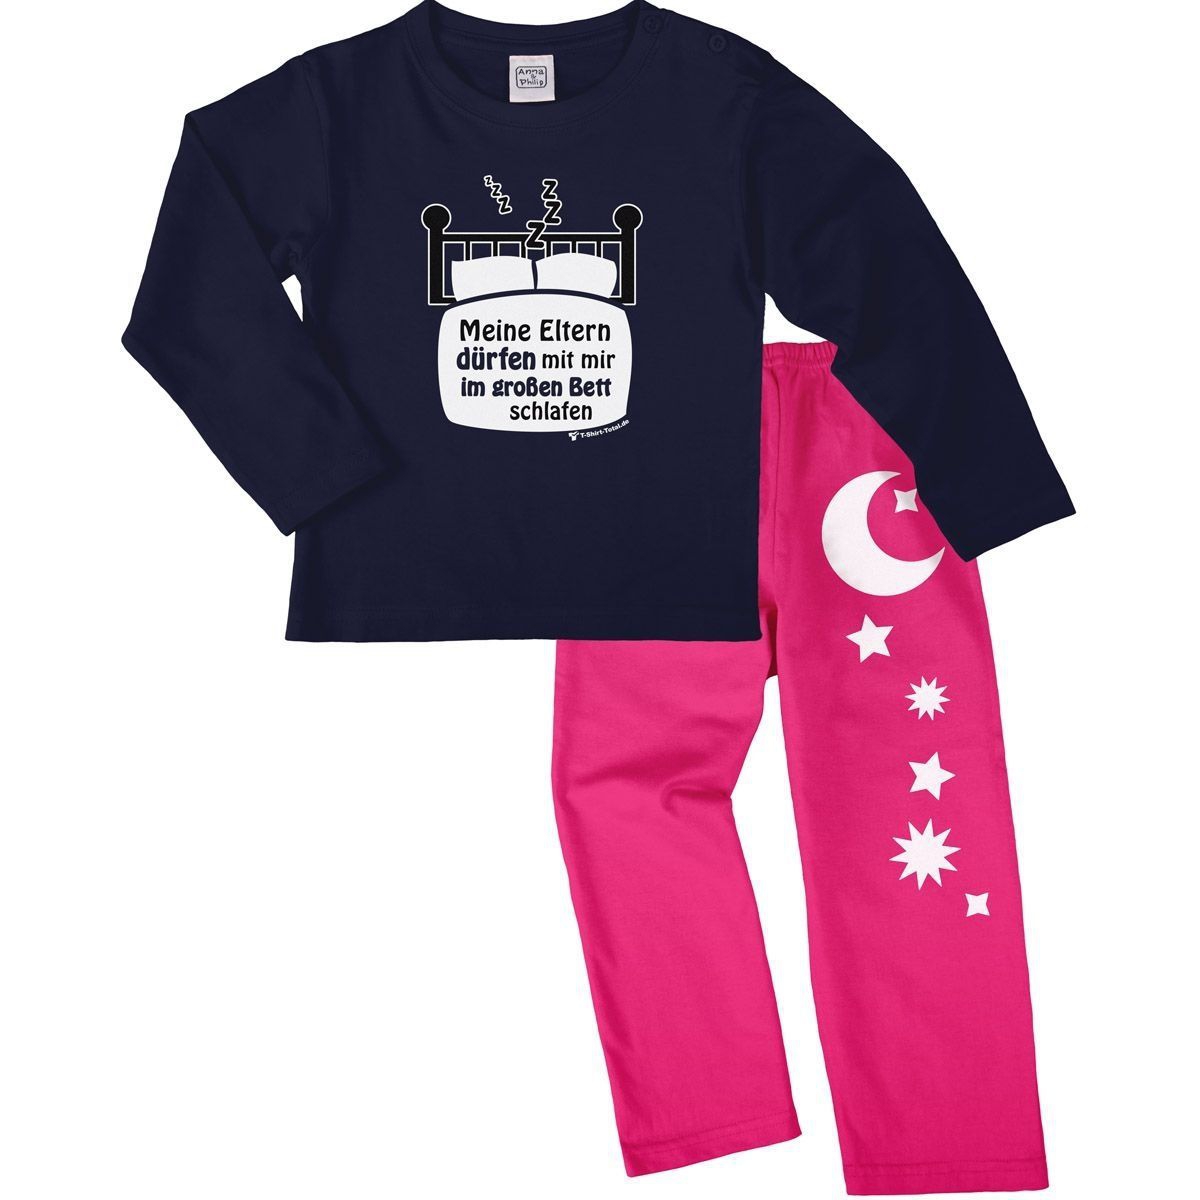 Im großen Bett schlafen Pyjama Set navy / pink 92